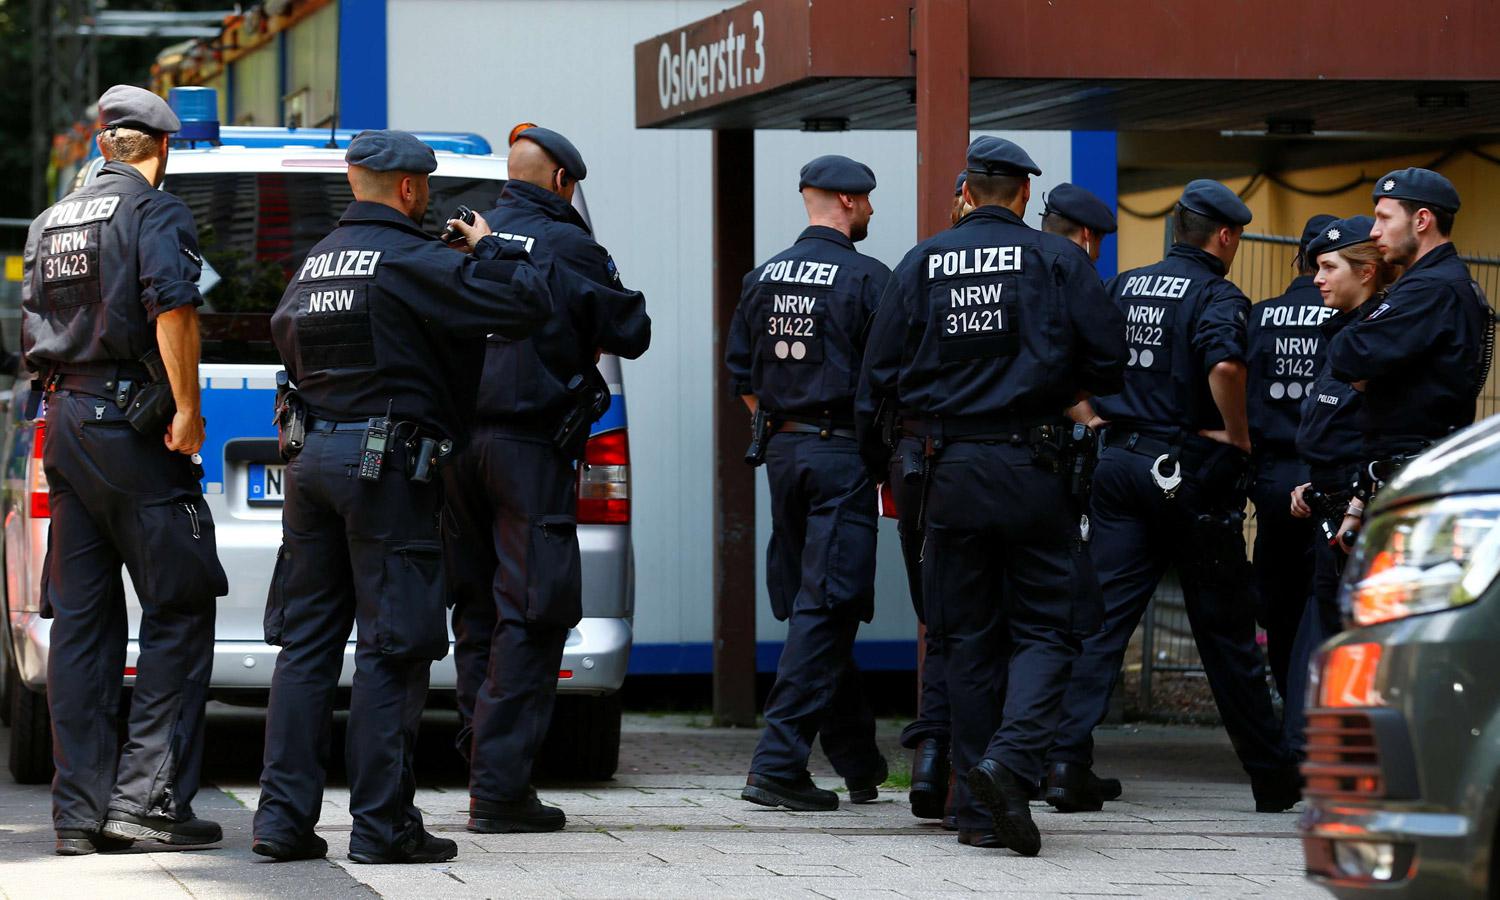 مدبر تفجير القطارات في كولونيا قضى 14 عاما في السجن في ألمانيا